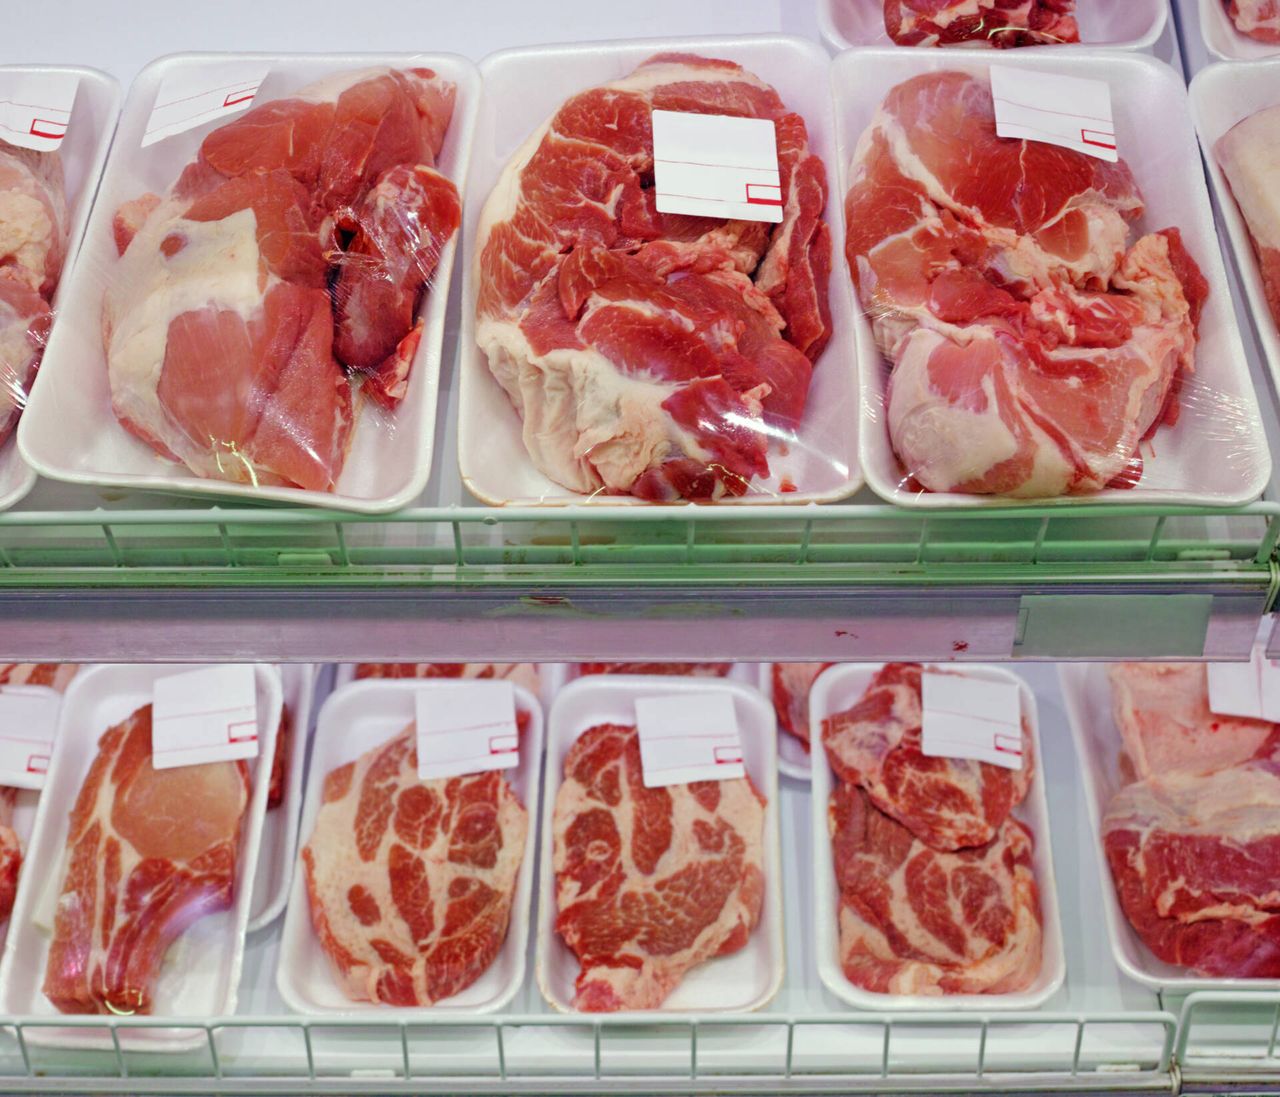 Wkładka w paczce z mięsem - Pyszności; Foto: Canva